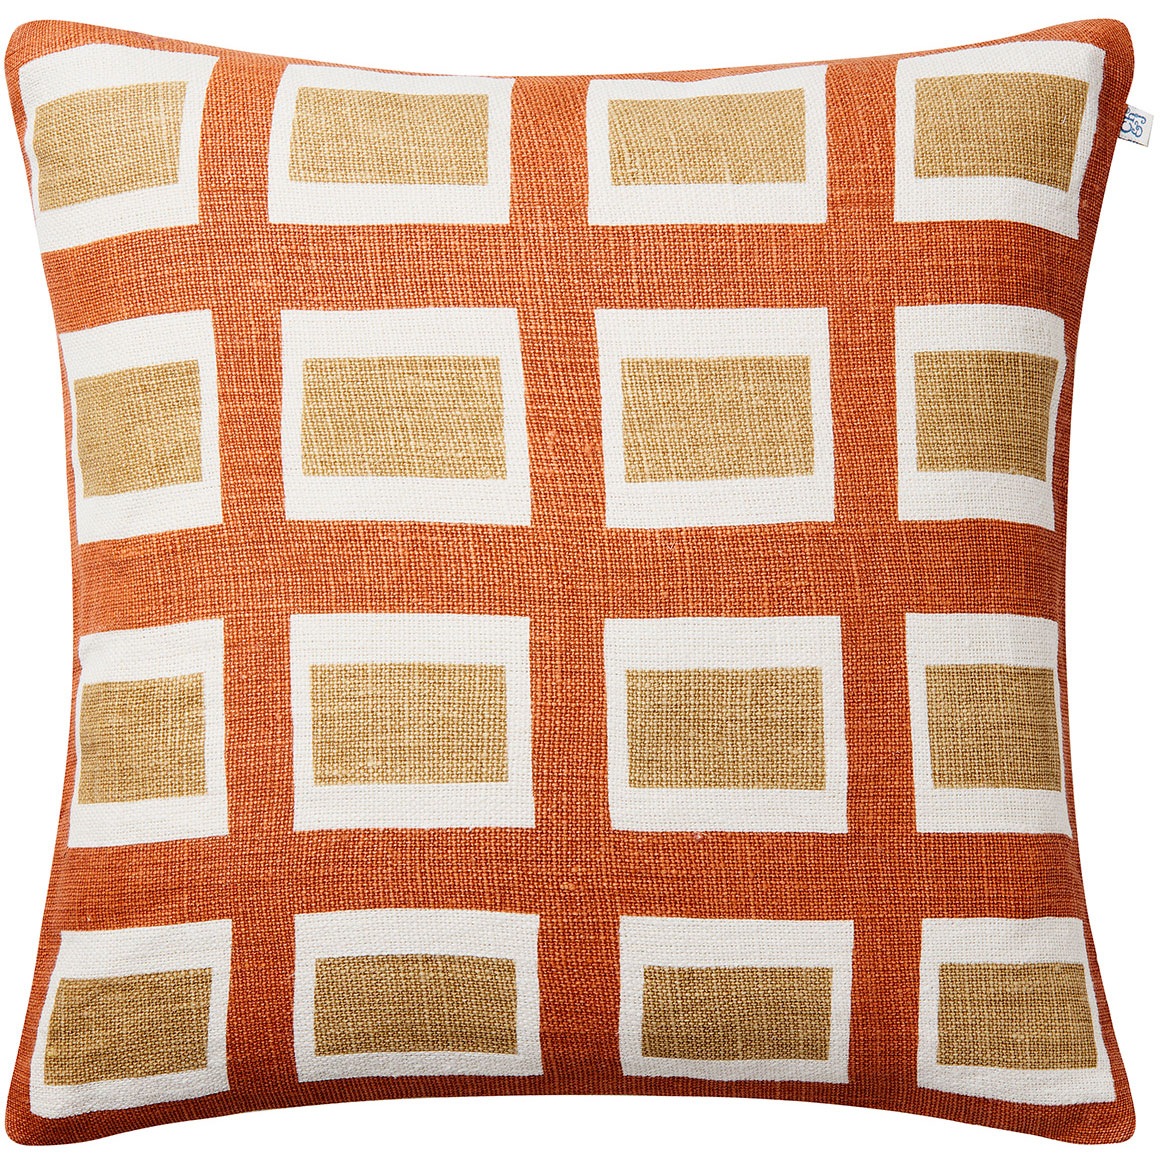 Hira Cushion Cover 50x50 cm, Apricot Orange / Khaki